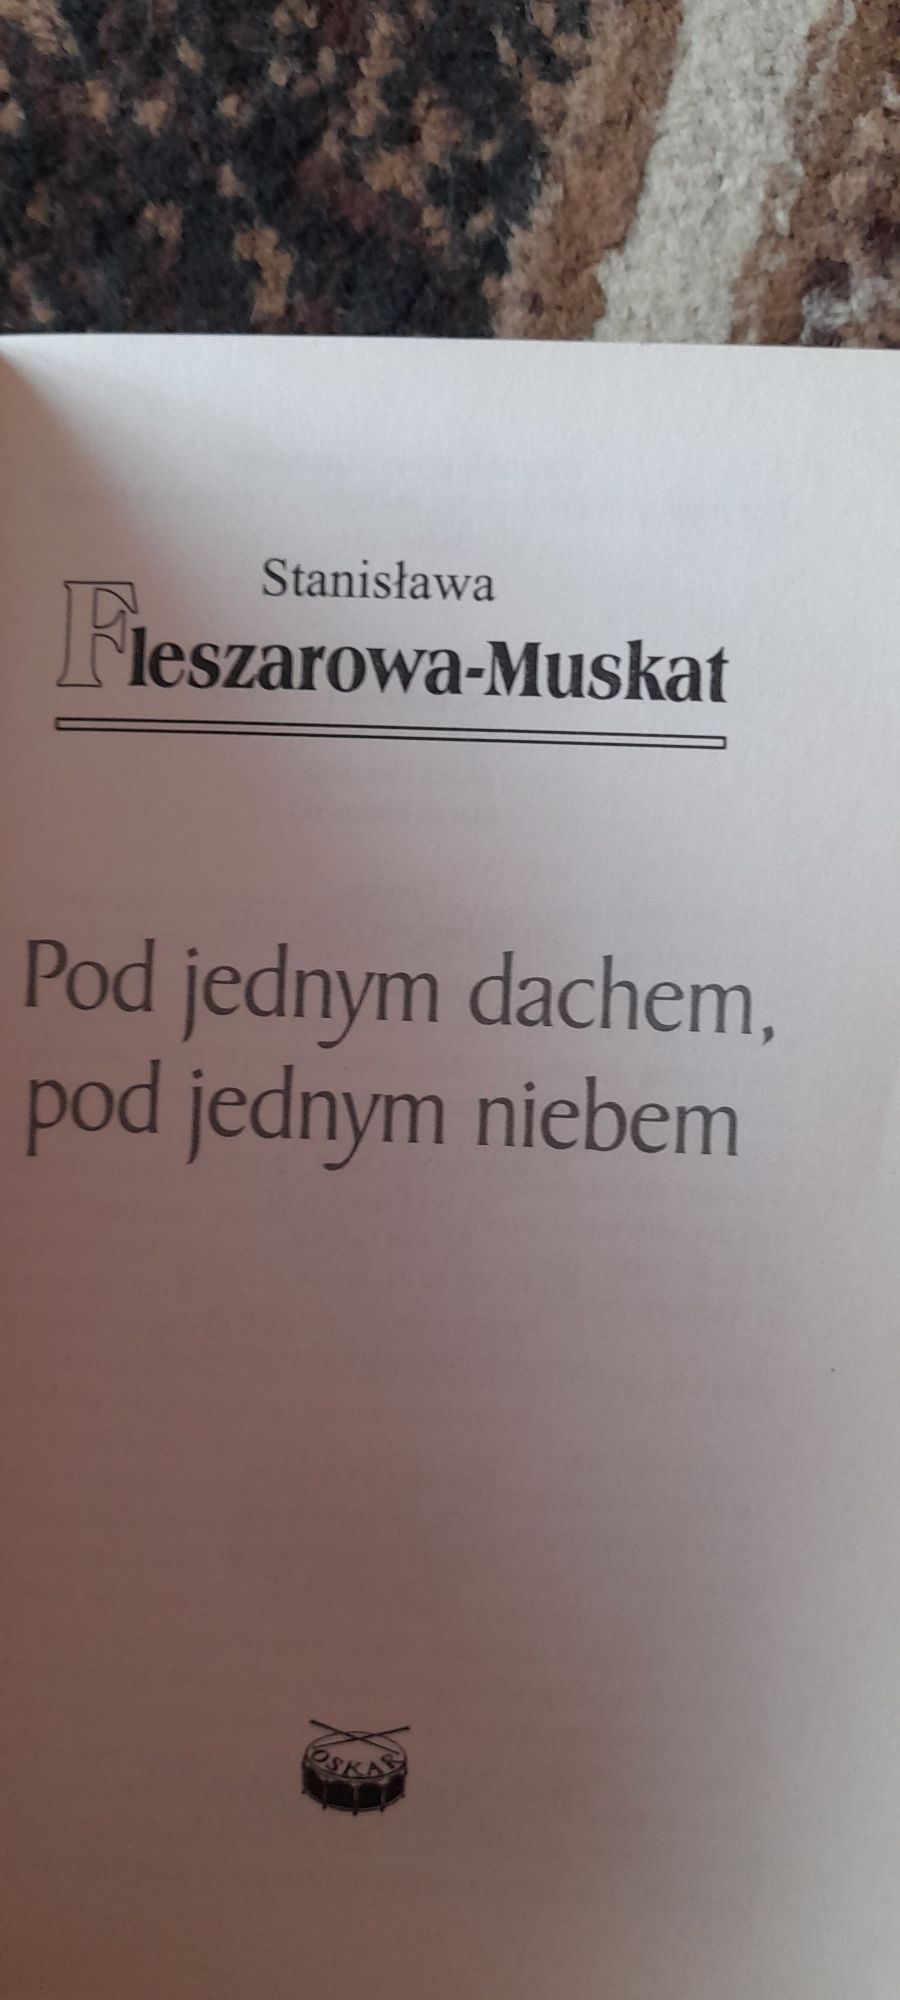 Pod jednym dachem, pod jednym niebem-Stanisława Fleszerowa-Muskat 2011